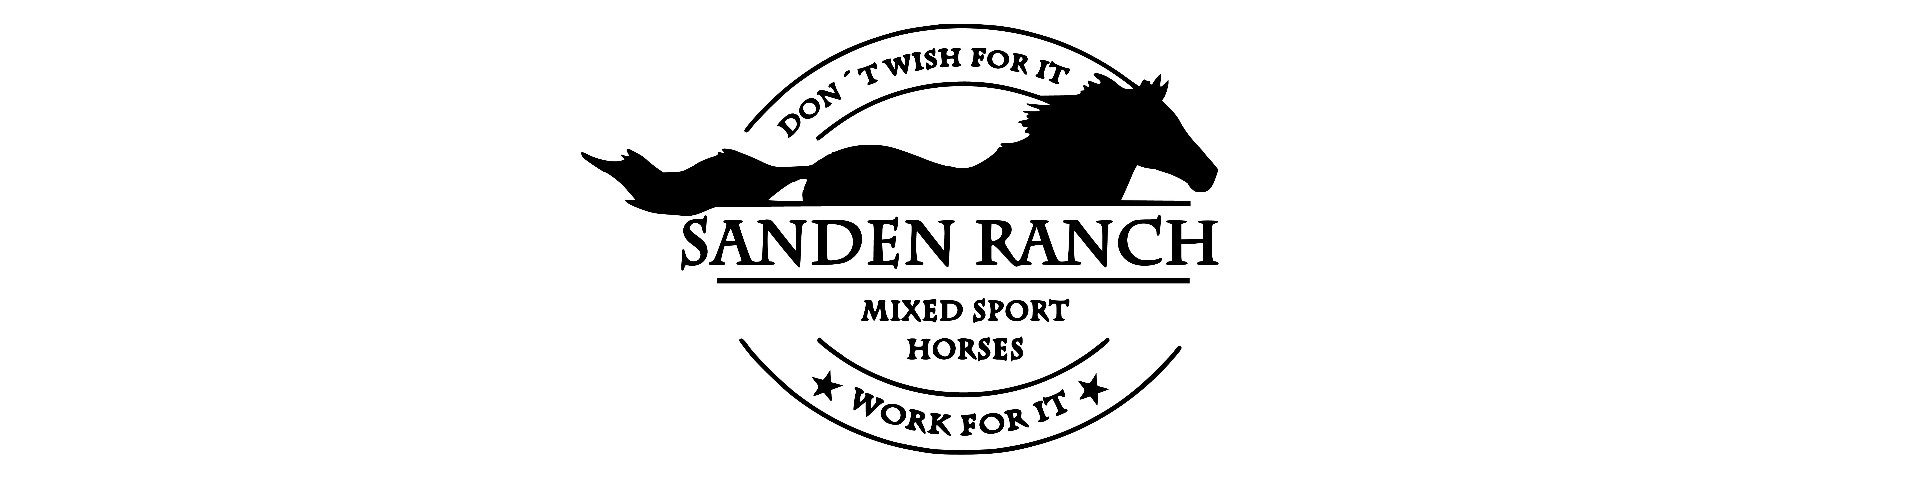 Sanden Ranch 